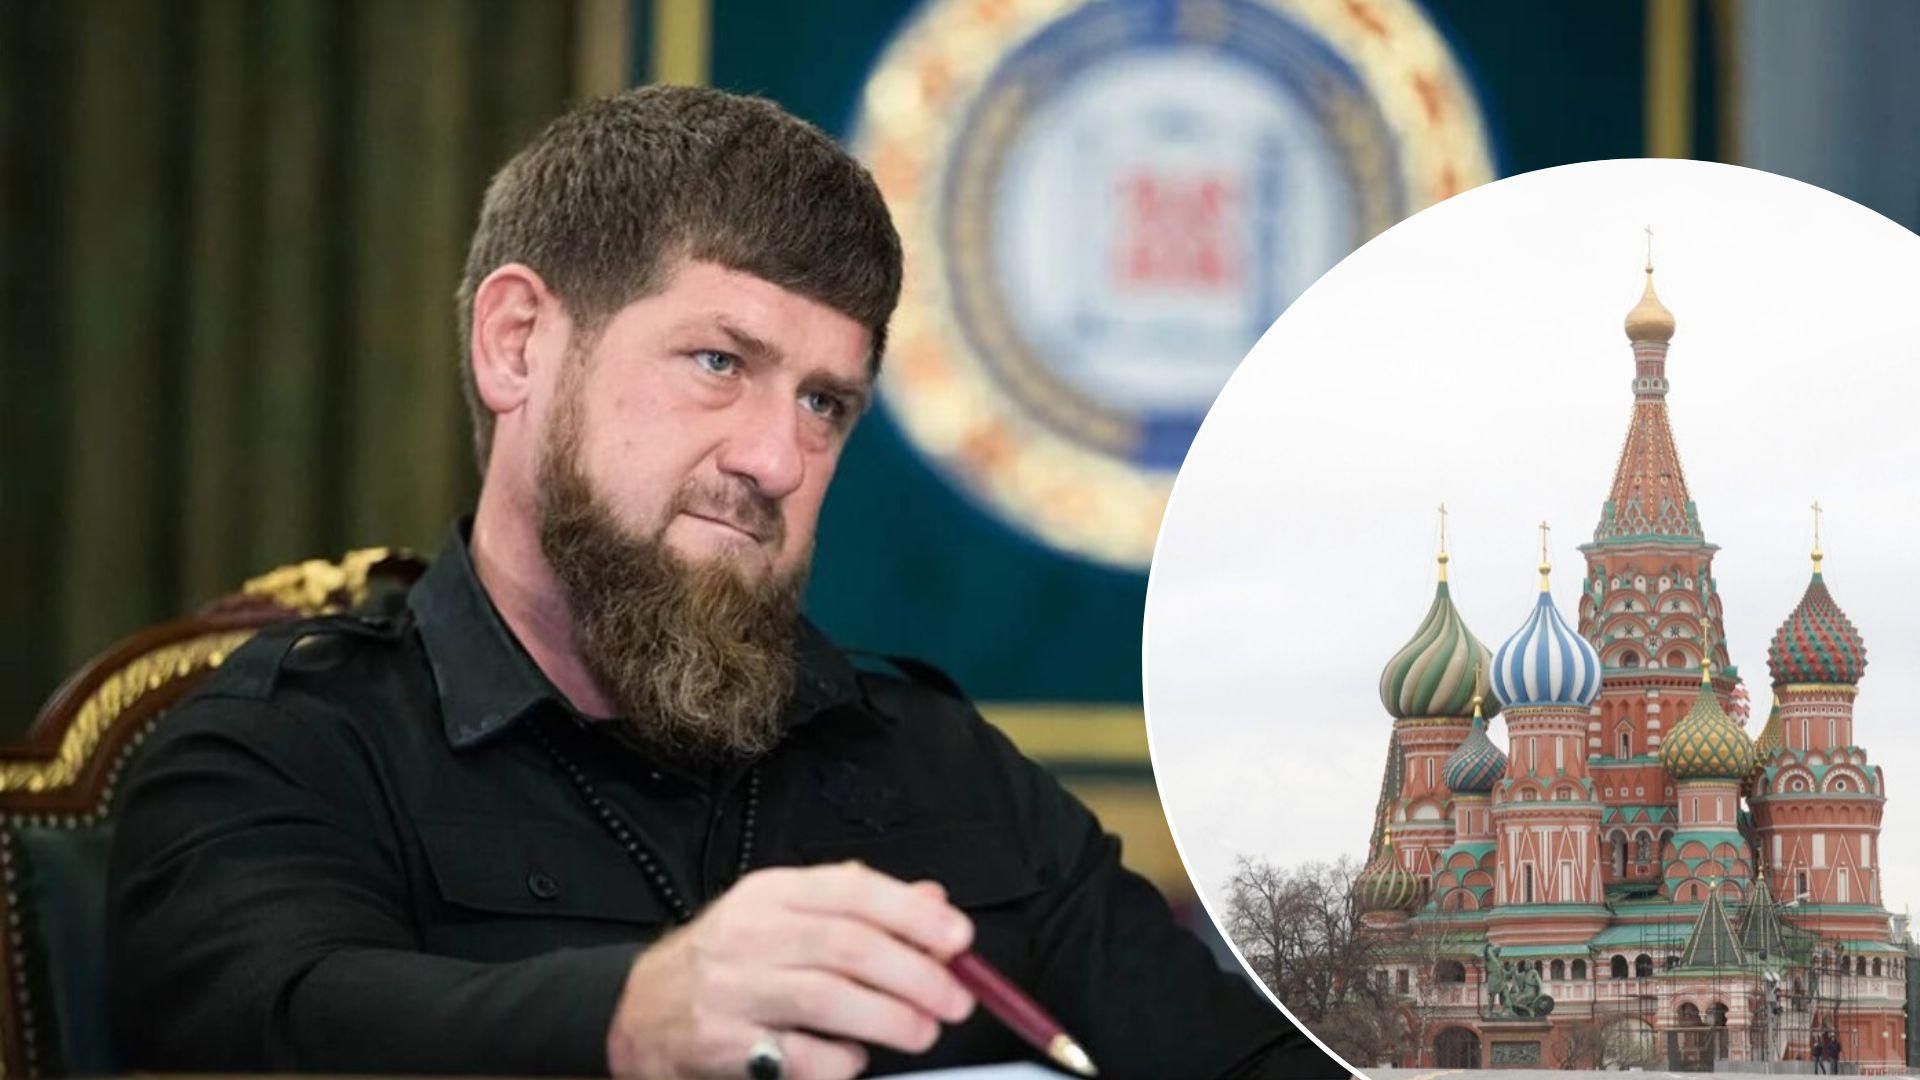 Рамзан Кадыров требует ПВО в Чечне, а в Москве внезапно проверят сирены